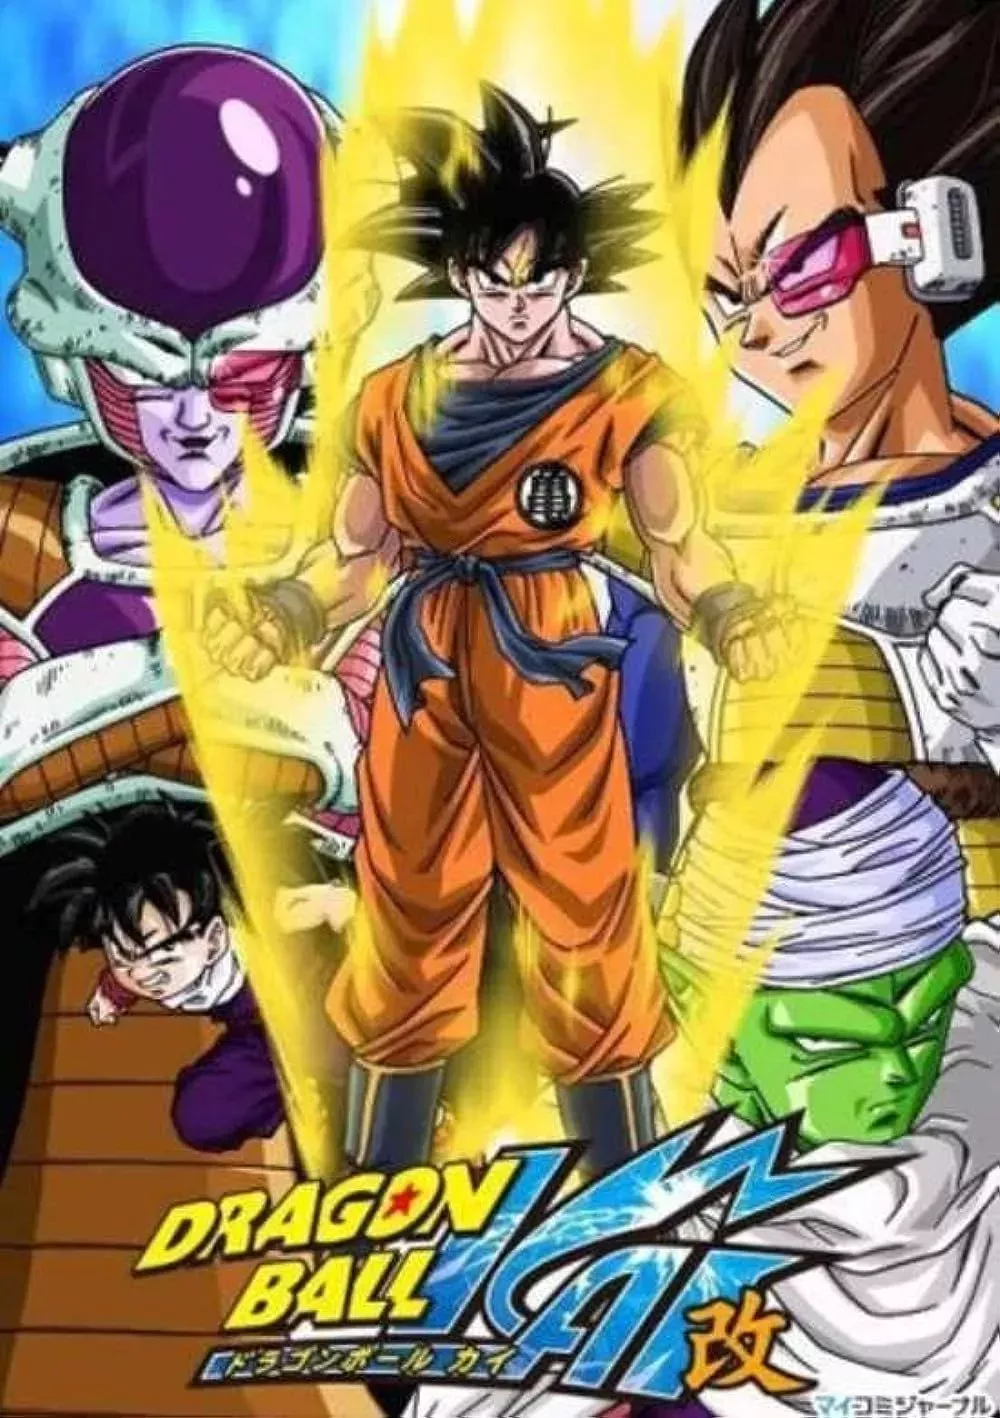 Poster of Dragon Ball Z Kai with Goku, Vegeta, and Piccolo